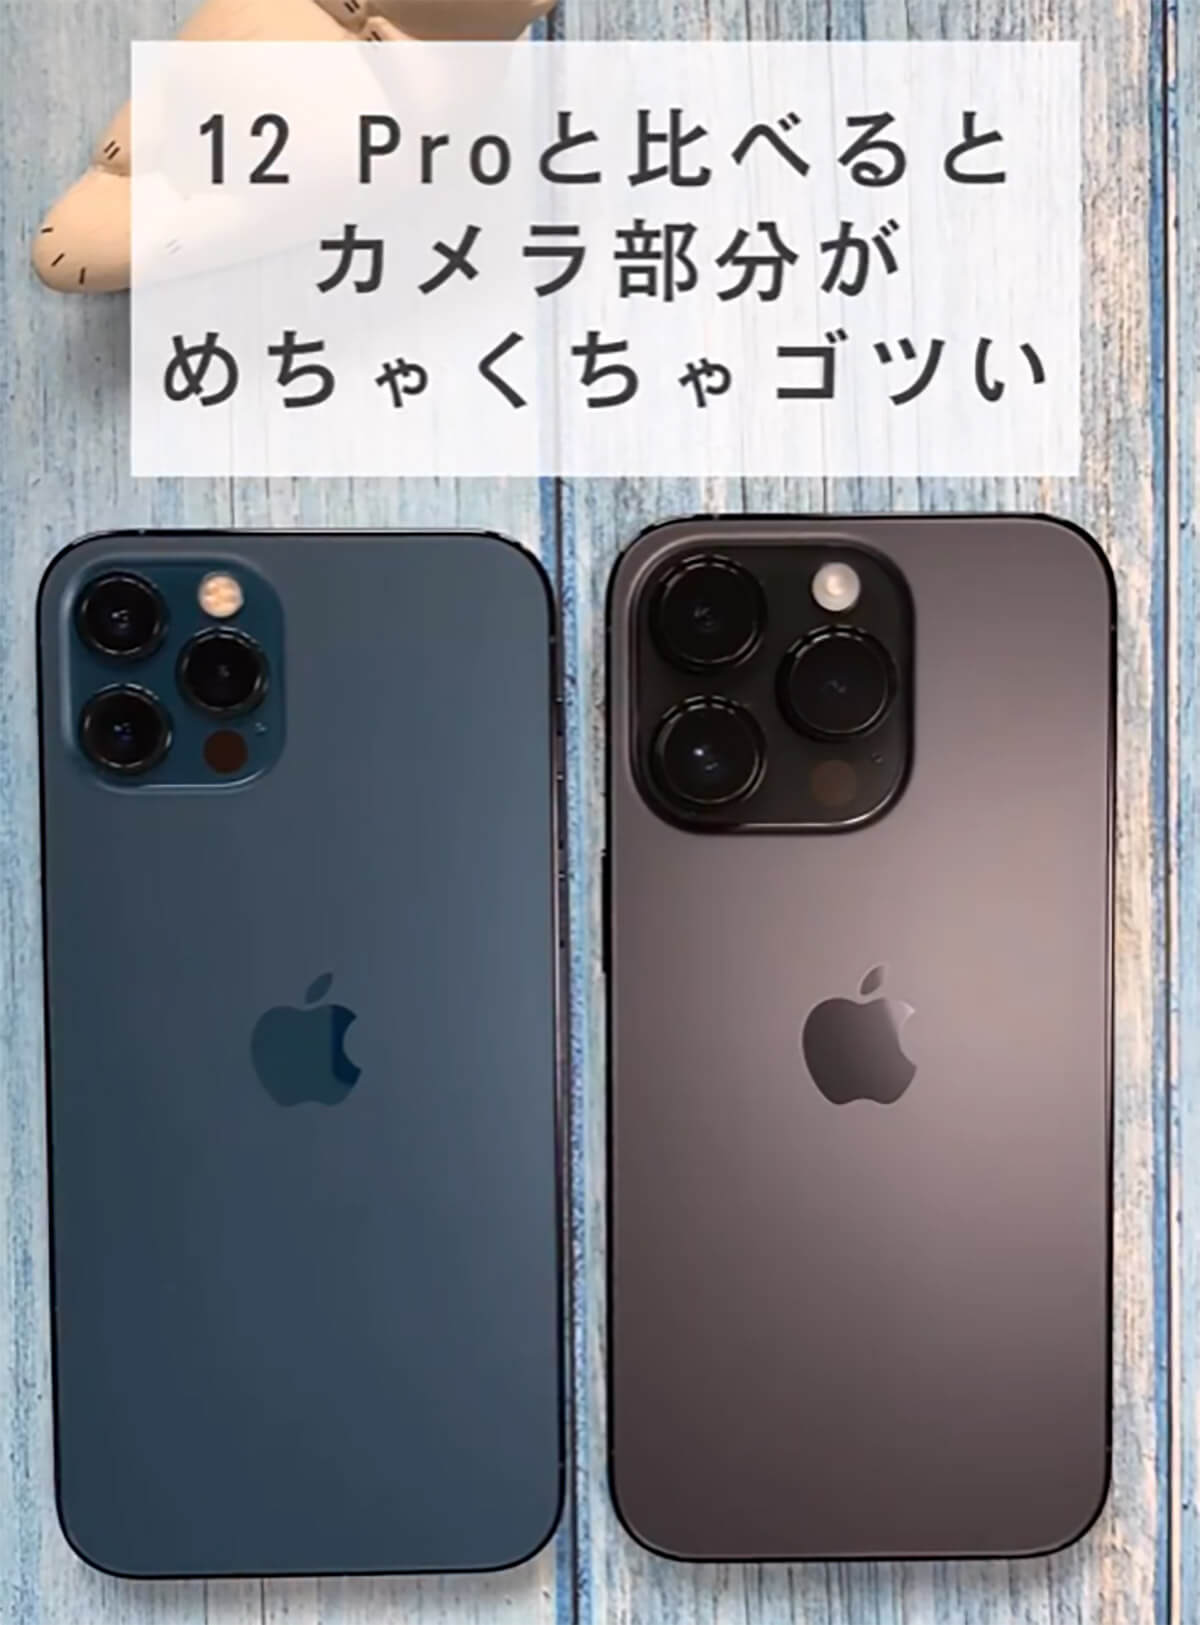 iPhone 12 Proとカメラ部分を比較するとiPhone 14 Proはめちゃくちゃゴツい